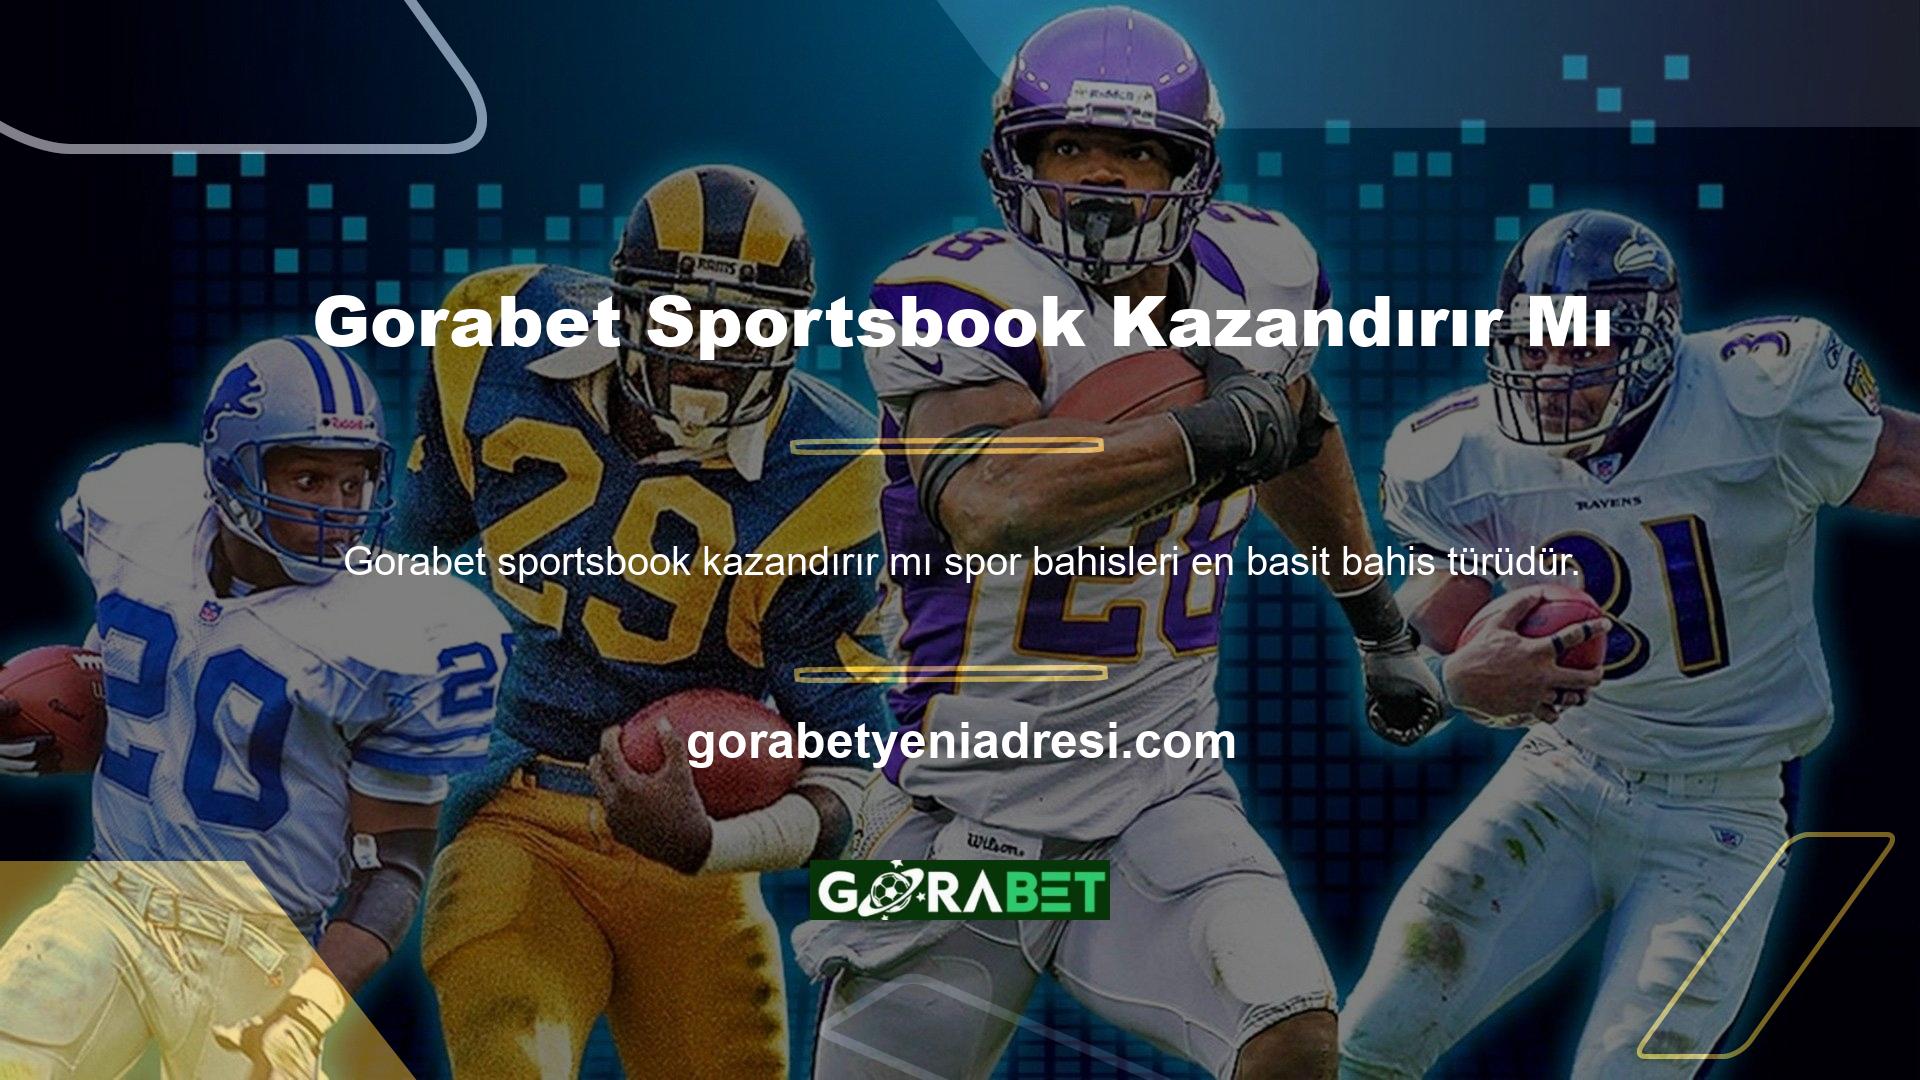 Gorabet web sitesi, spora biraz ilgi duyan bahisçiler için kolay bir kazanma şansı sunuyor